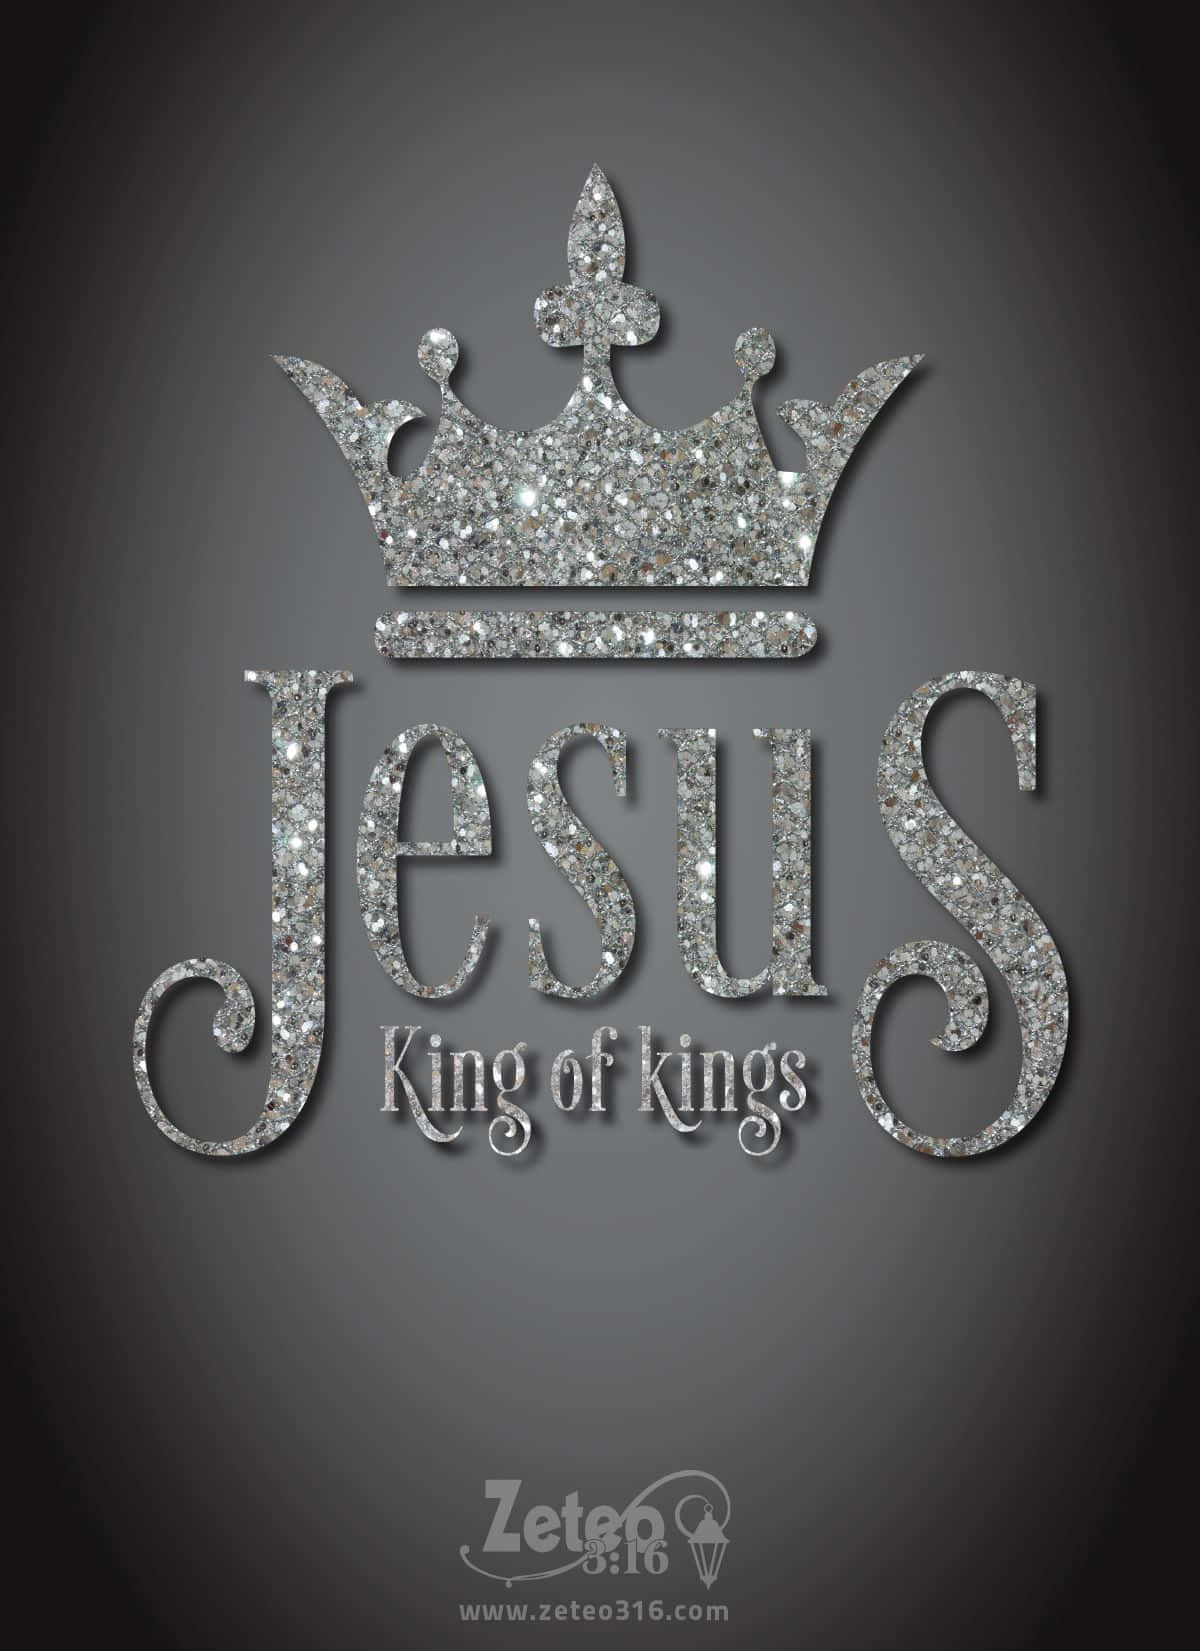 Jesuser Kongen Af Konger. Wallpaper